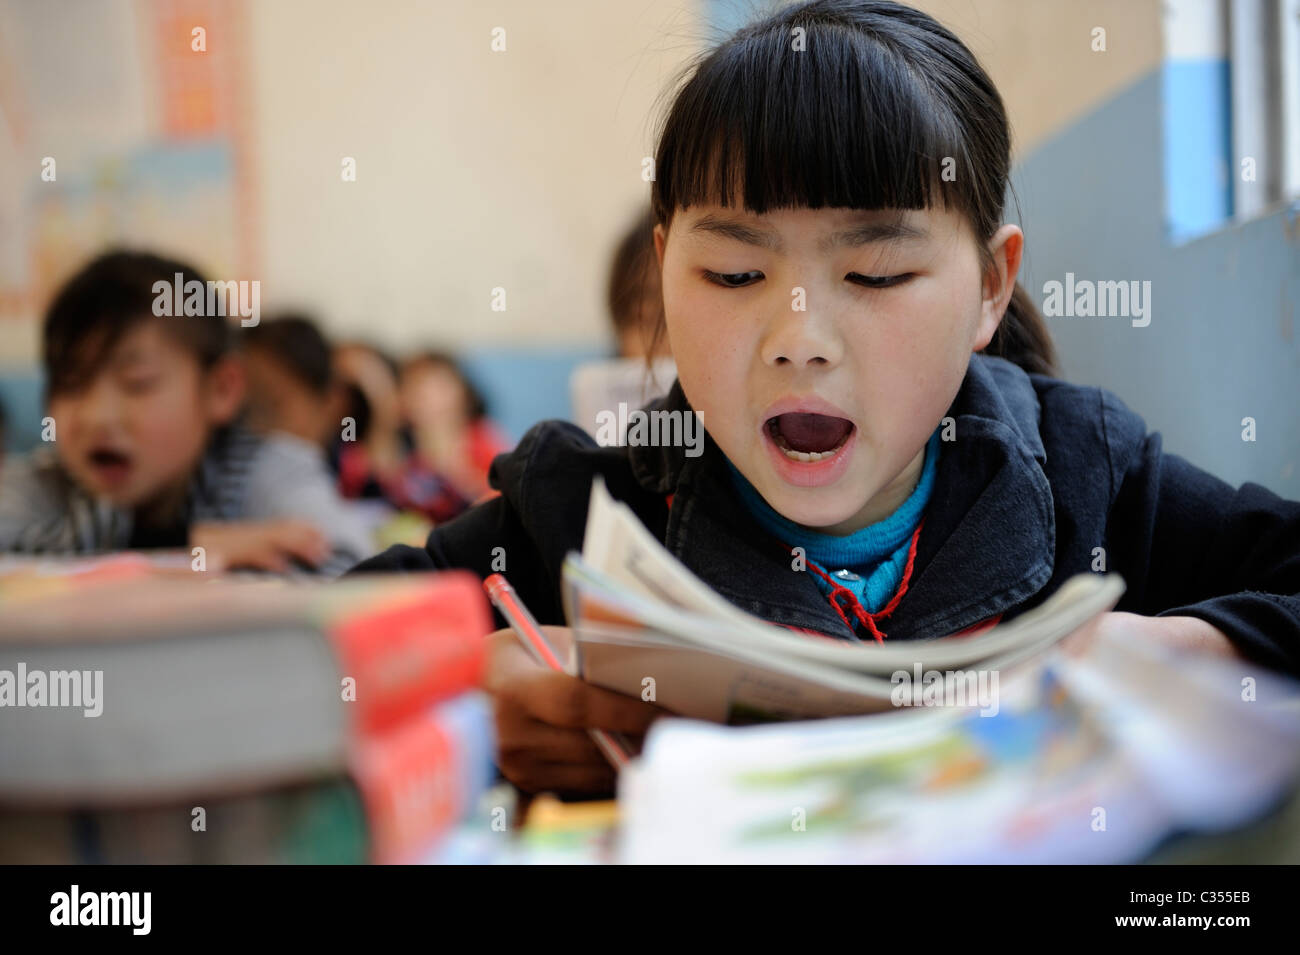 Cinese Scuola primaria agli studenti di frequentare la classe nella campagna remota nella contea di Duan, Guangxi, Cina. 20-Apr-2011 Foto Stock